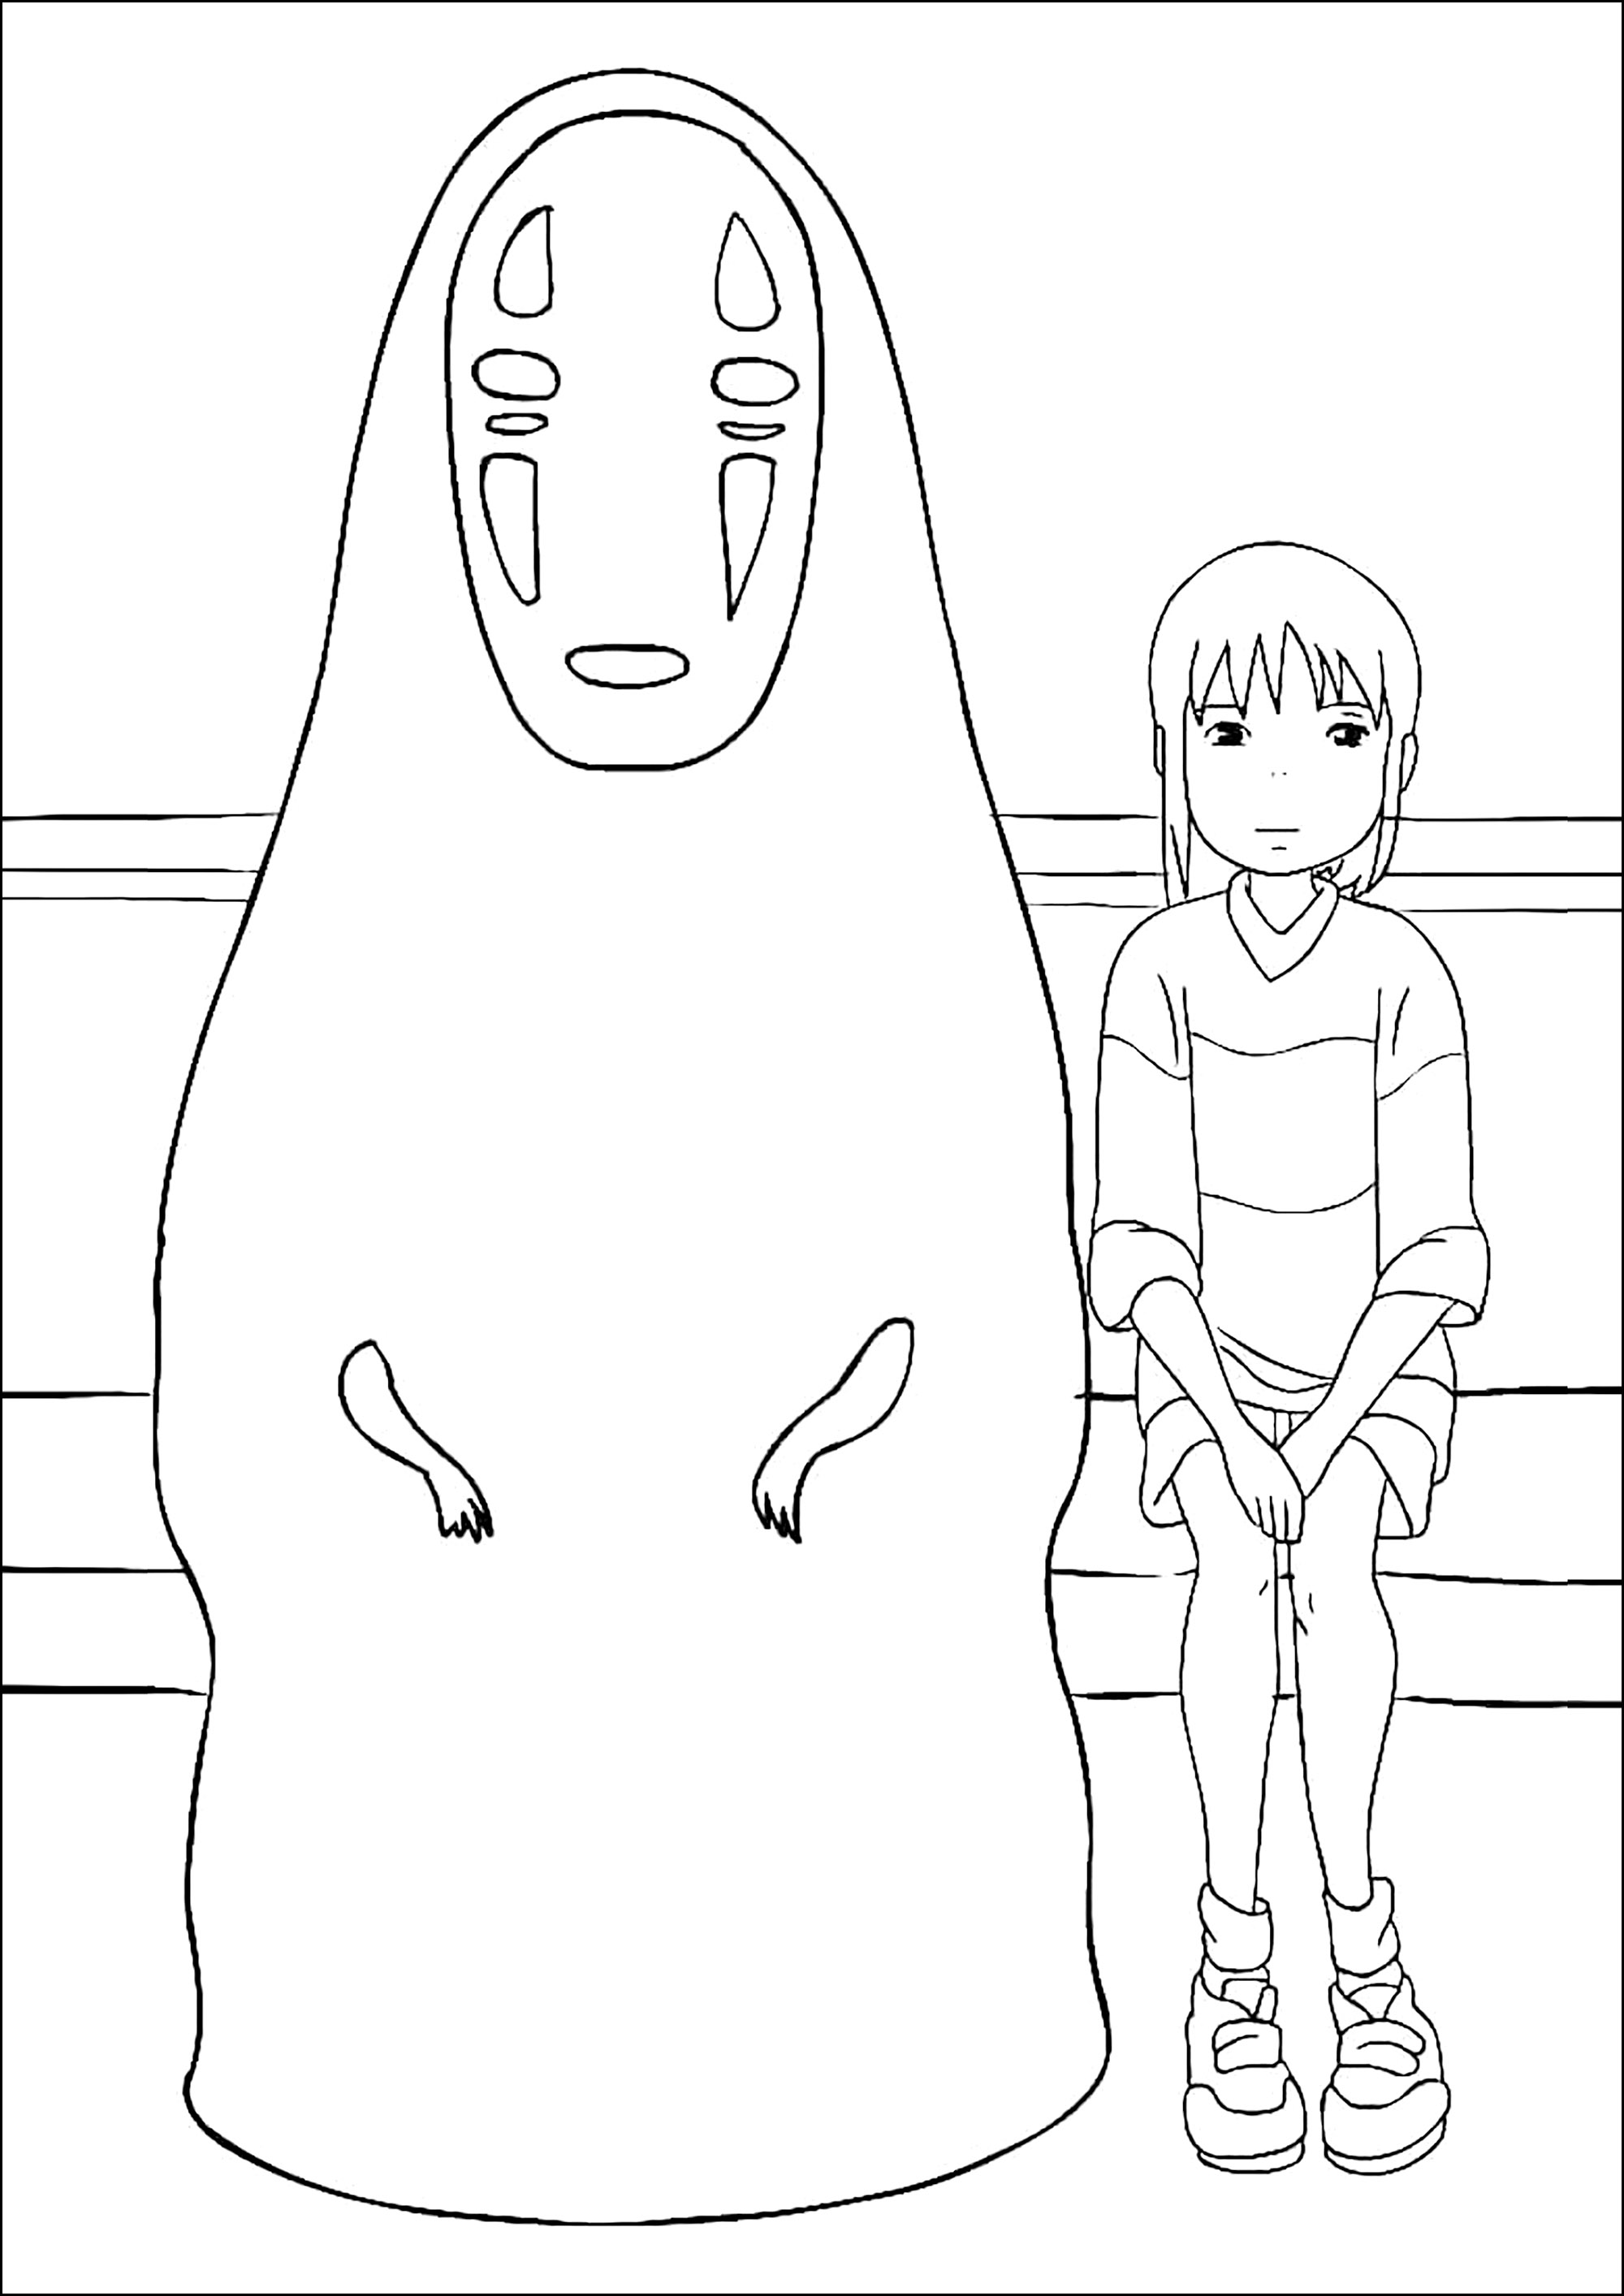 El viaje de Chihiro: Chihiro y Kaonashi ('Sin rostro'). Kaonashi. El 'sin rostro' es un enigmático personaje que puede hacerse invisible y cuyo rostro está oculto por una máscara.